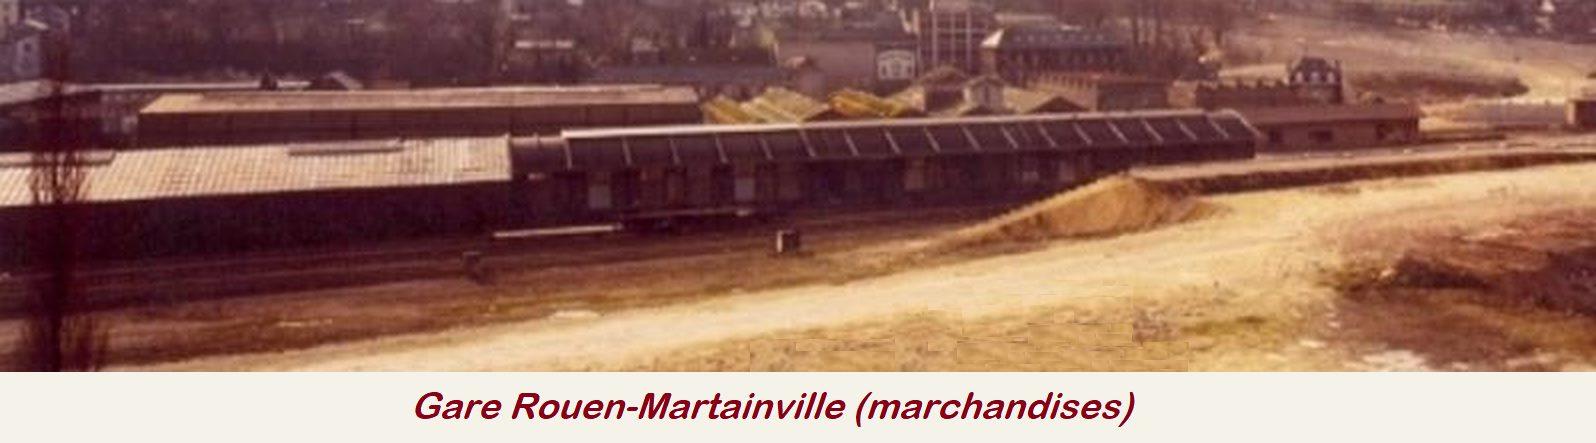 Gare Rouen-Martainville marchandises